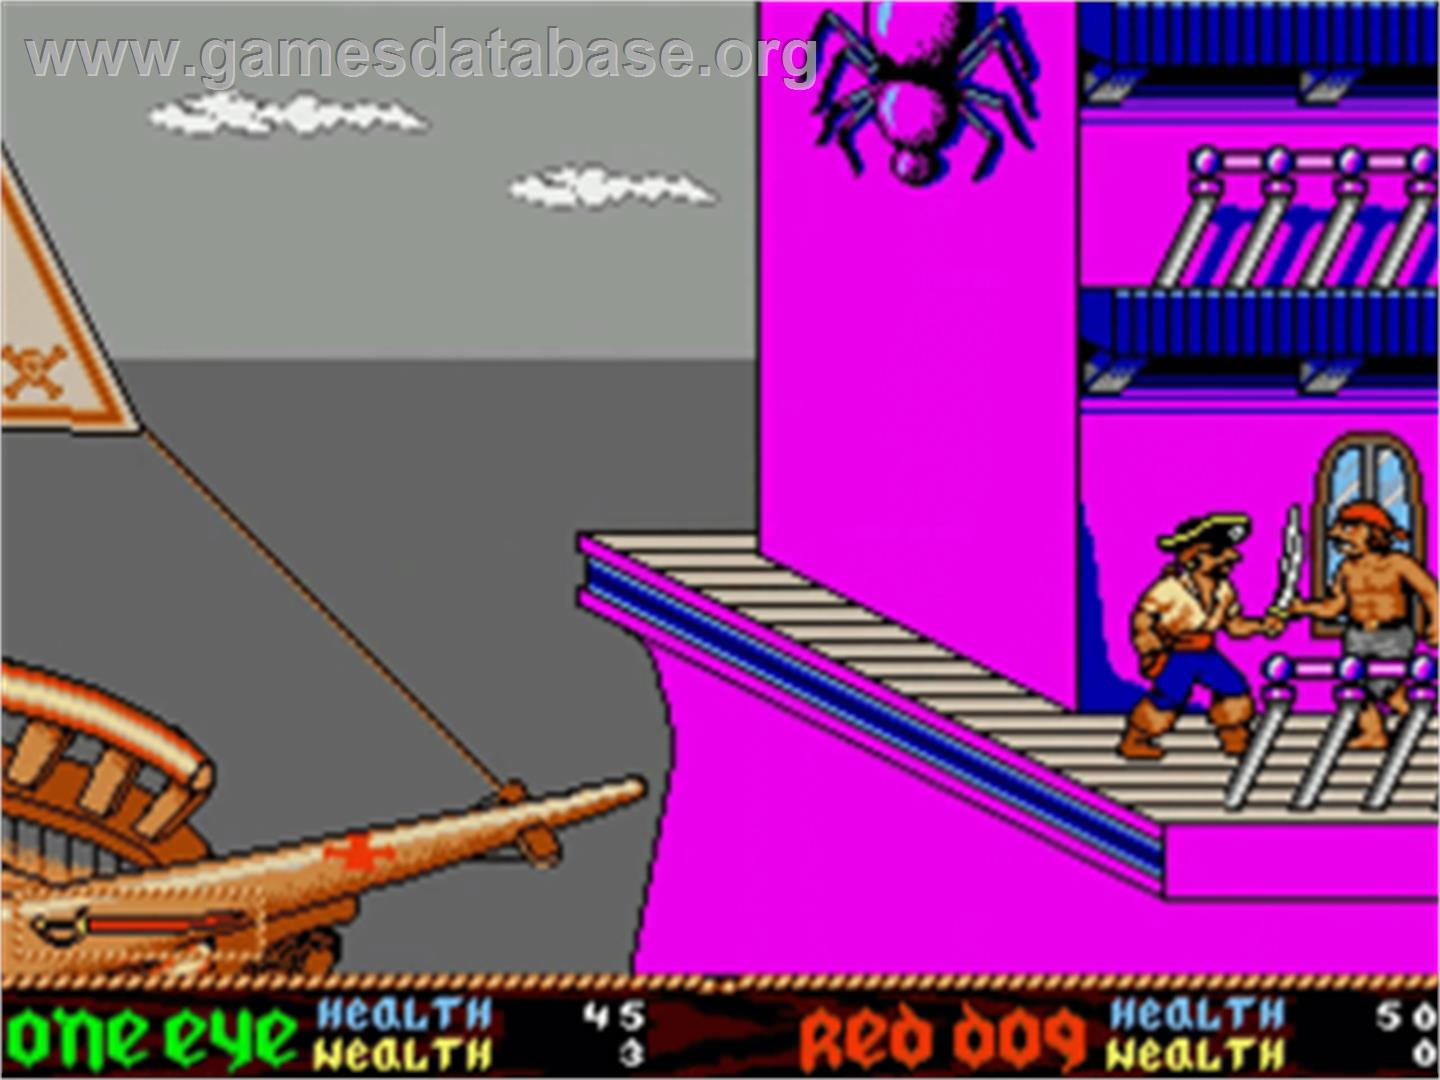 Skull & Crossbones - Commodore Amiga - Artwork - In Game